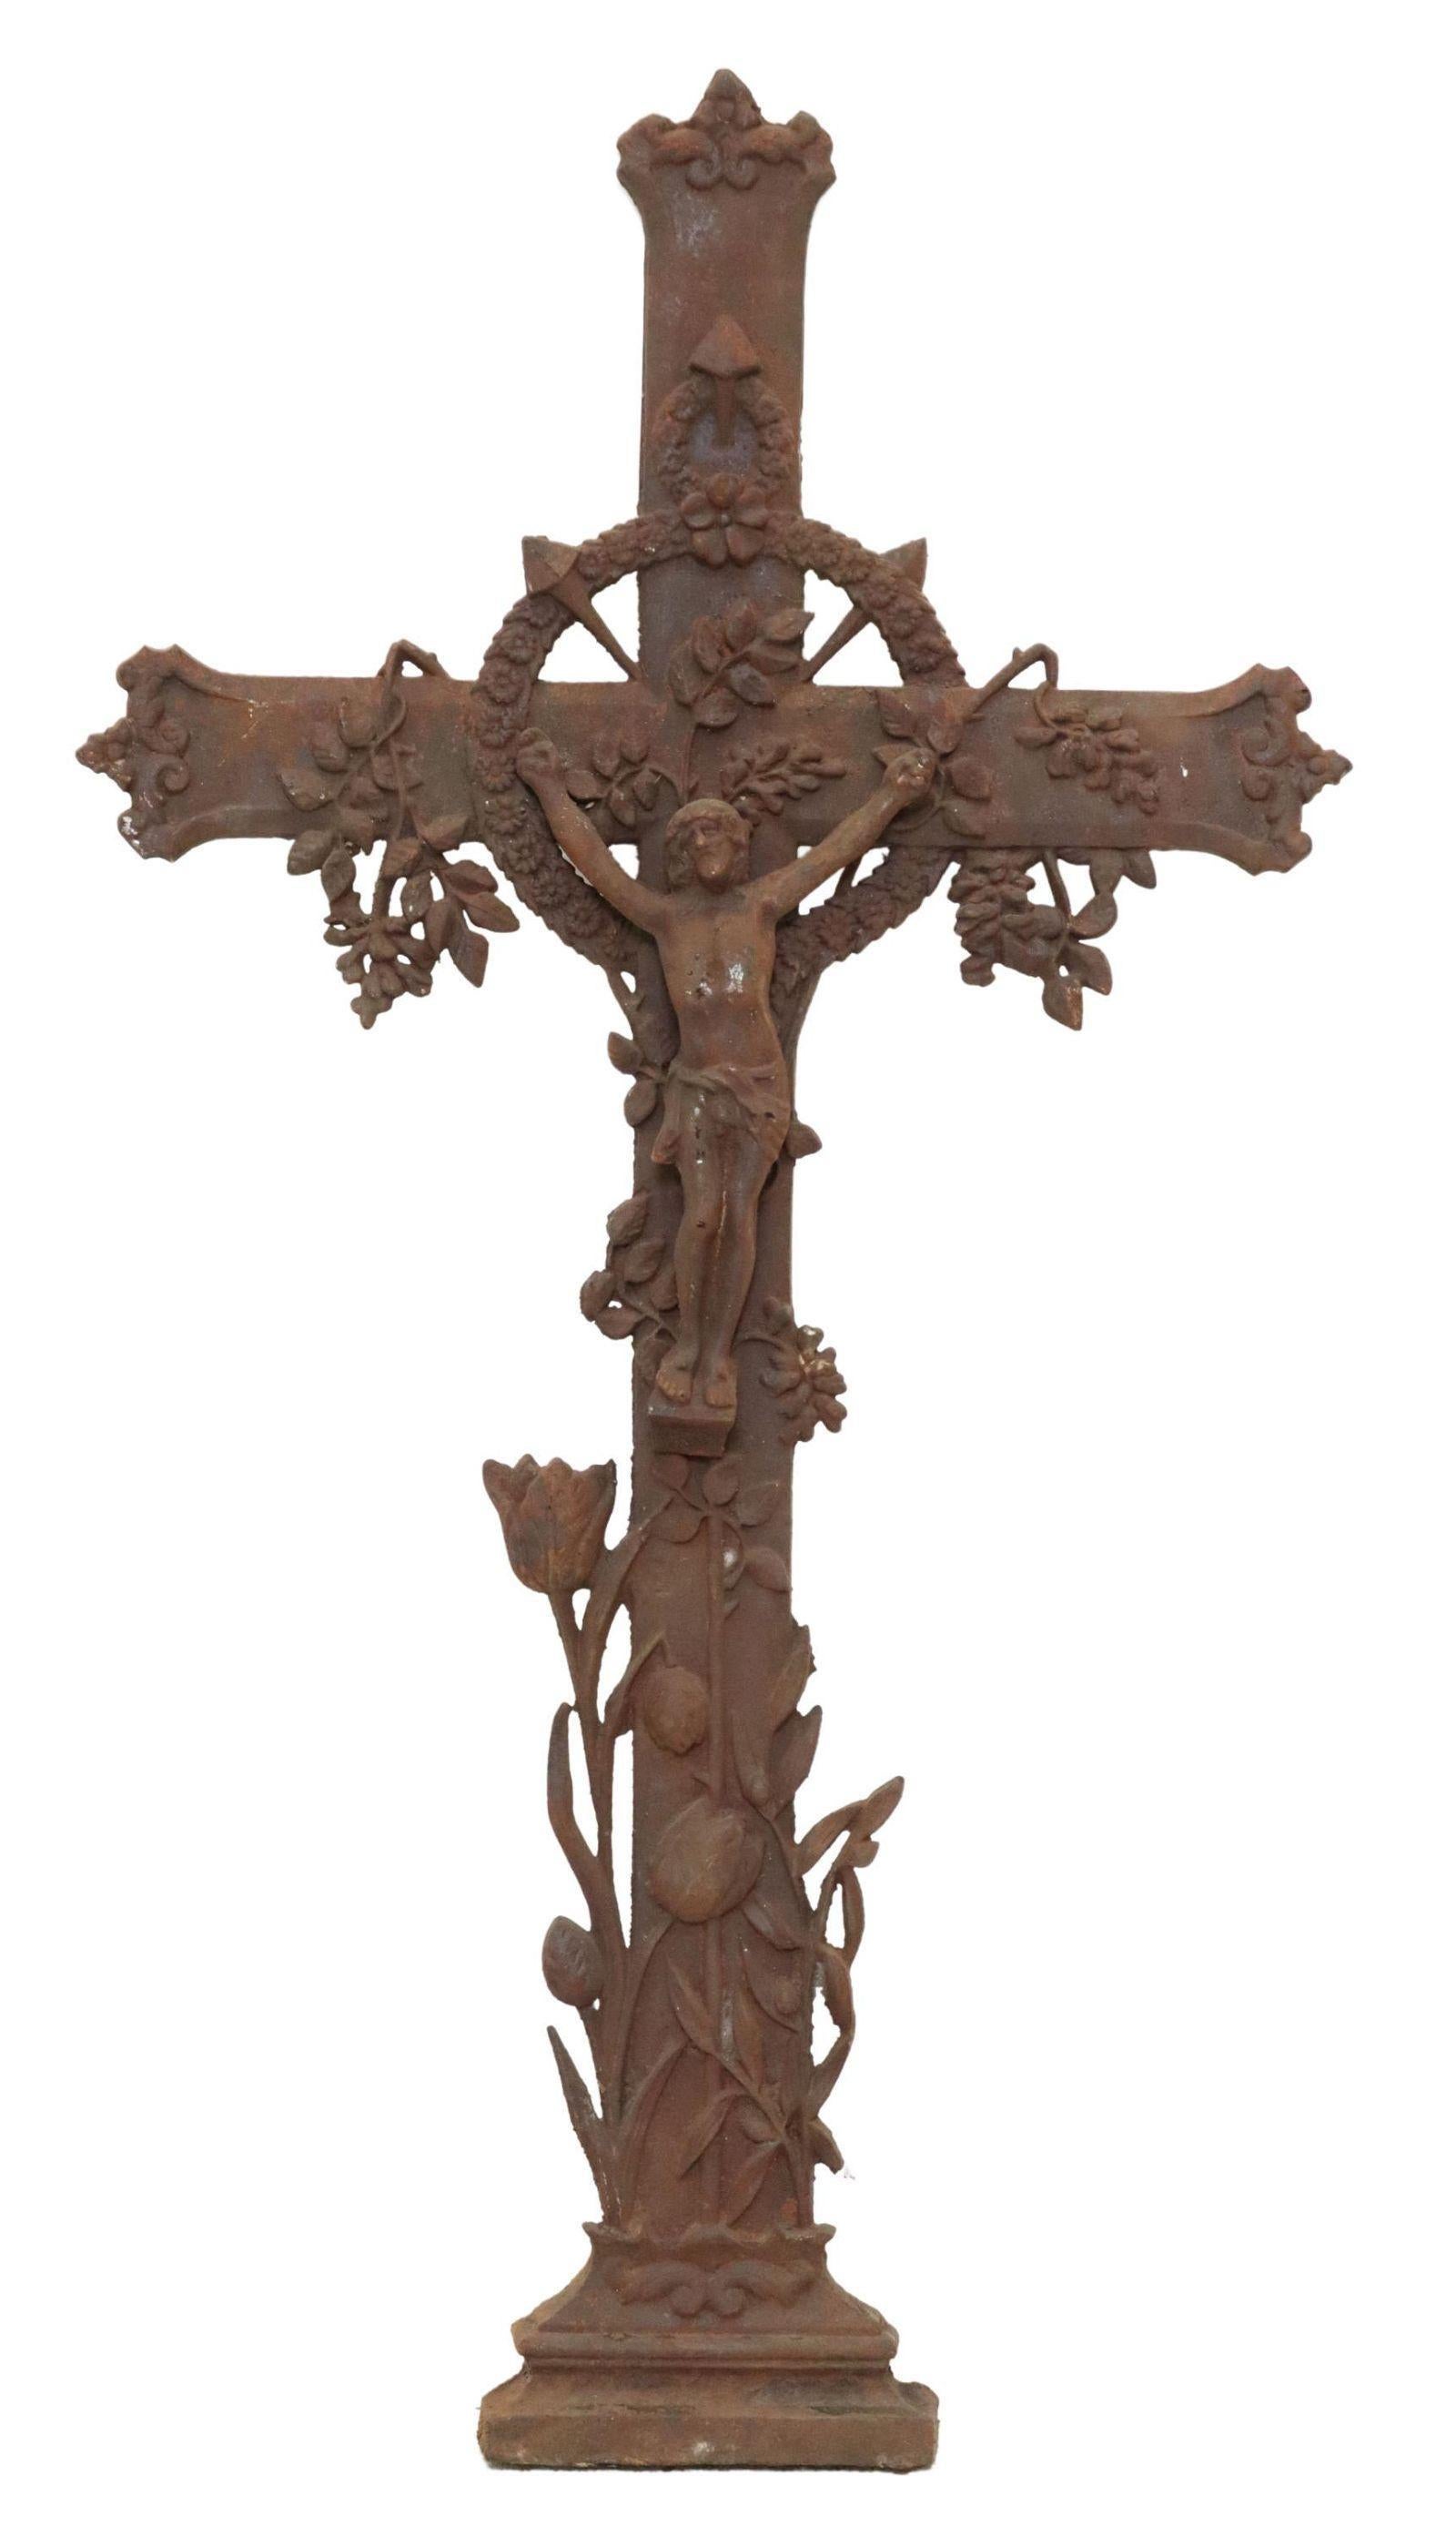 Antikes französisches Kruzifix aus Gusseisen, 19. Jh., mit Blattkranz, Rankenblüten, Corpus Christi in der Mitte, über Tulpen am Sockel.

Abmessungen
ca. 47,5